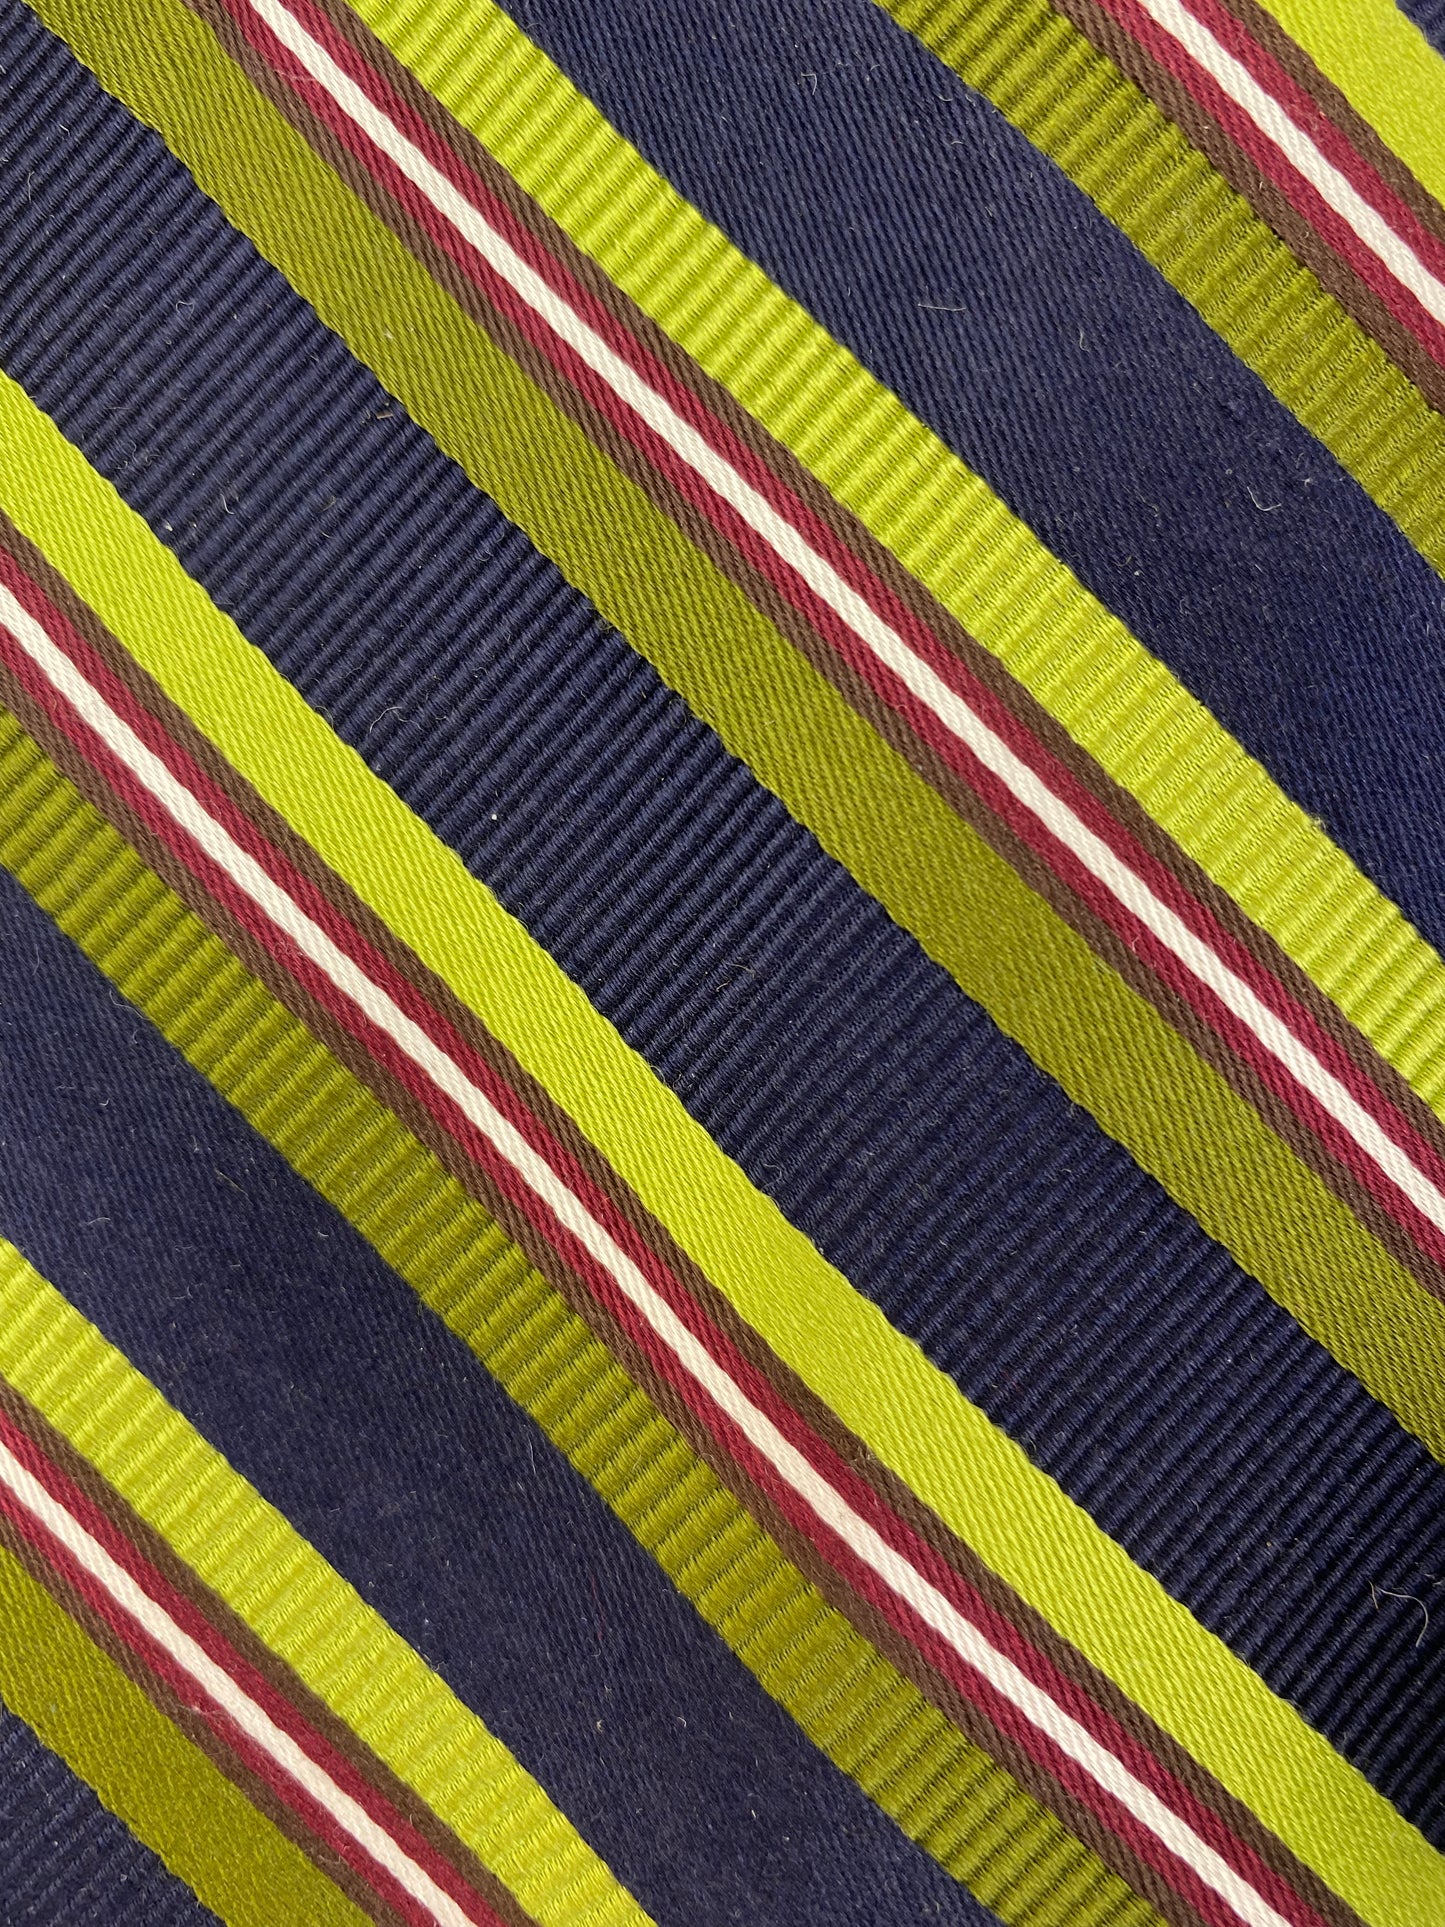 Close-up of: 90s Deadstock Silk Necktie, Men's Vintage Green/ Navy/ Wine Regimental Stripe Pattern Tie, NOS